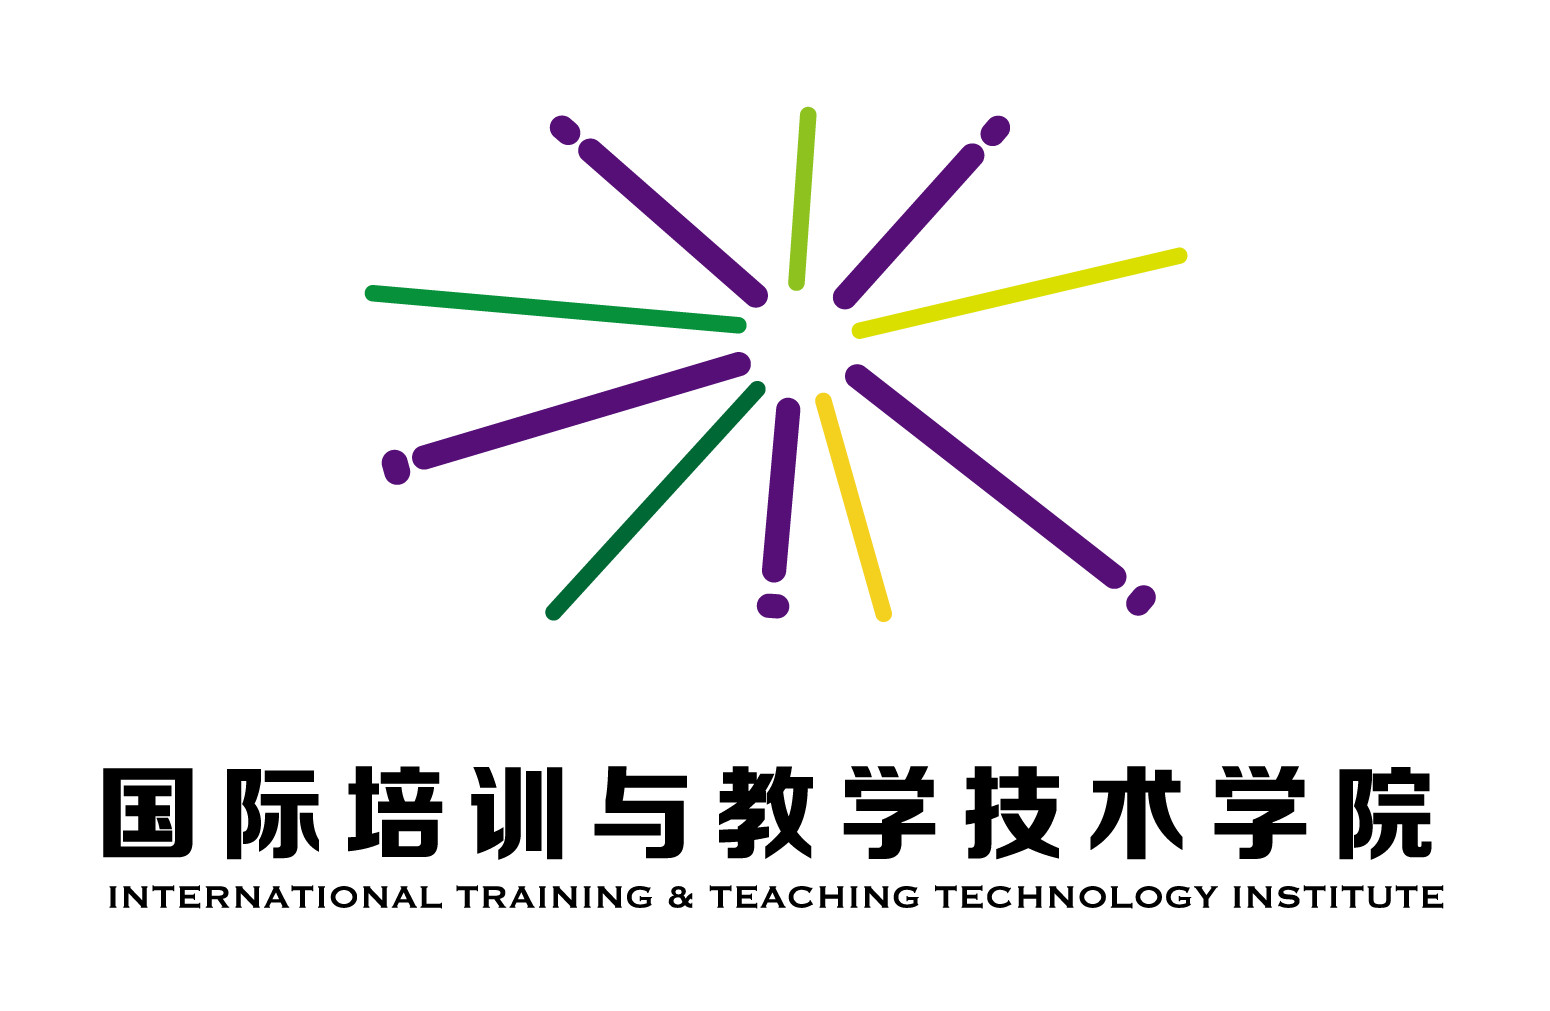 国际培训与教学技术学院